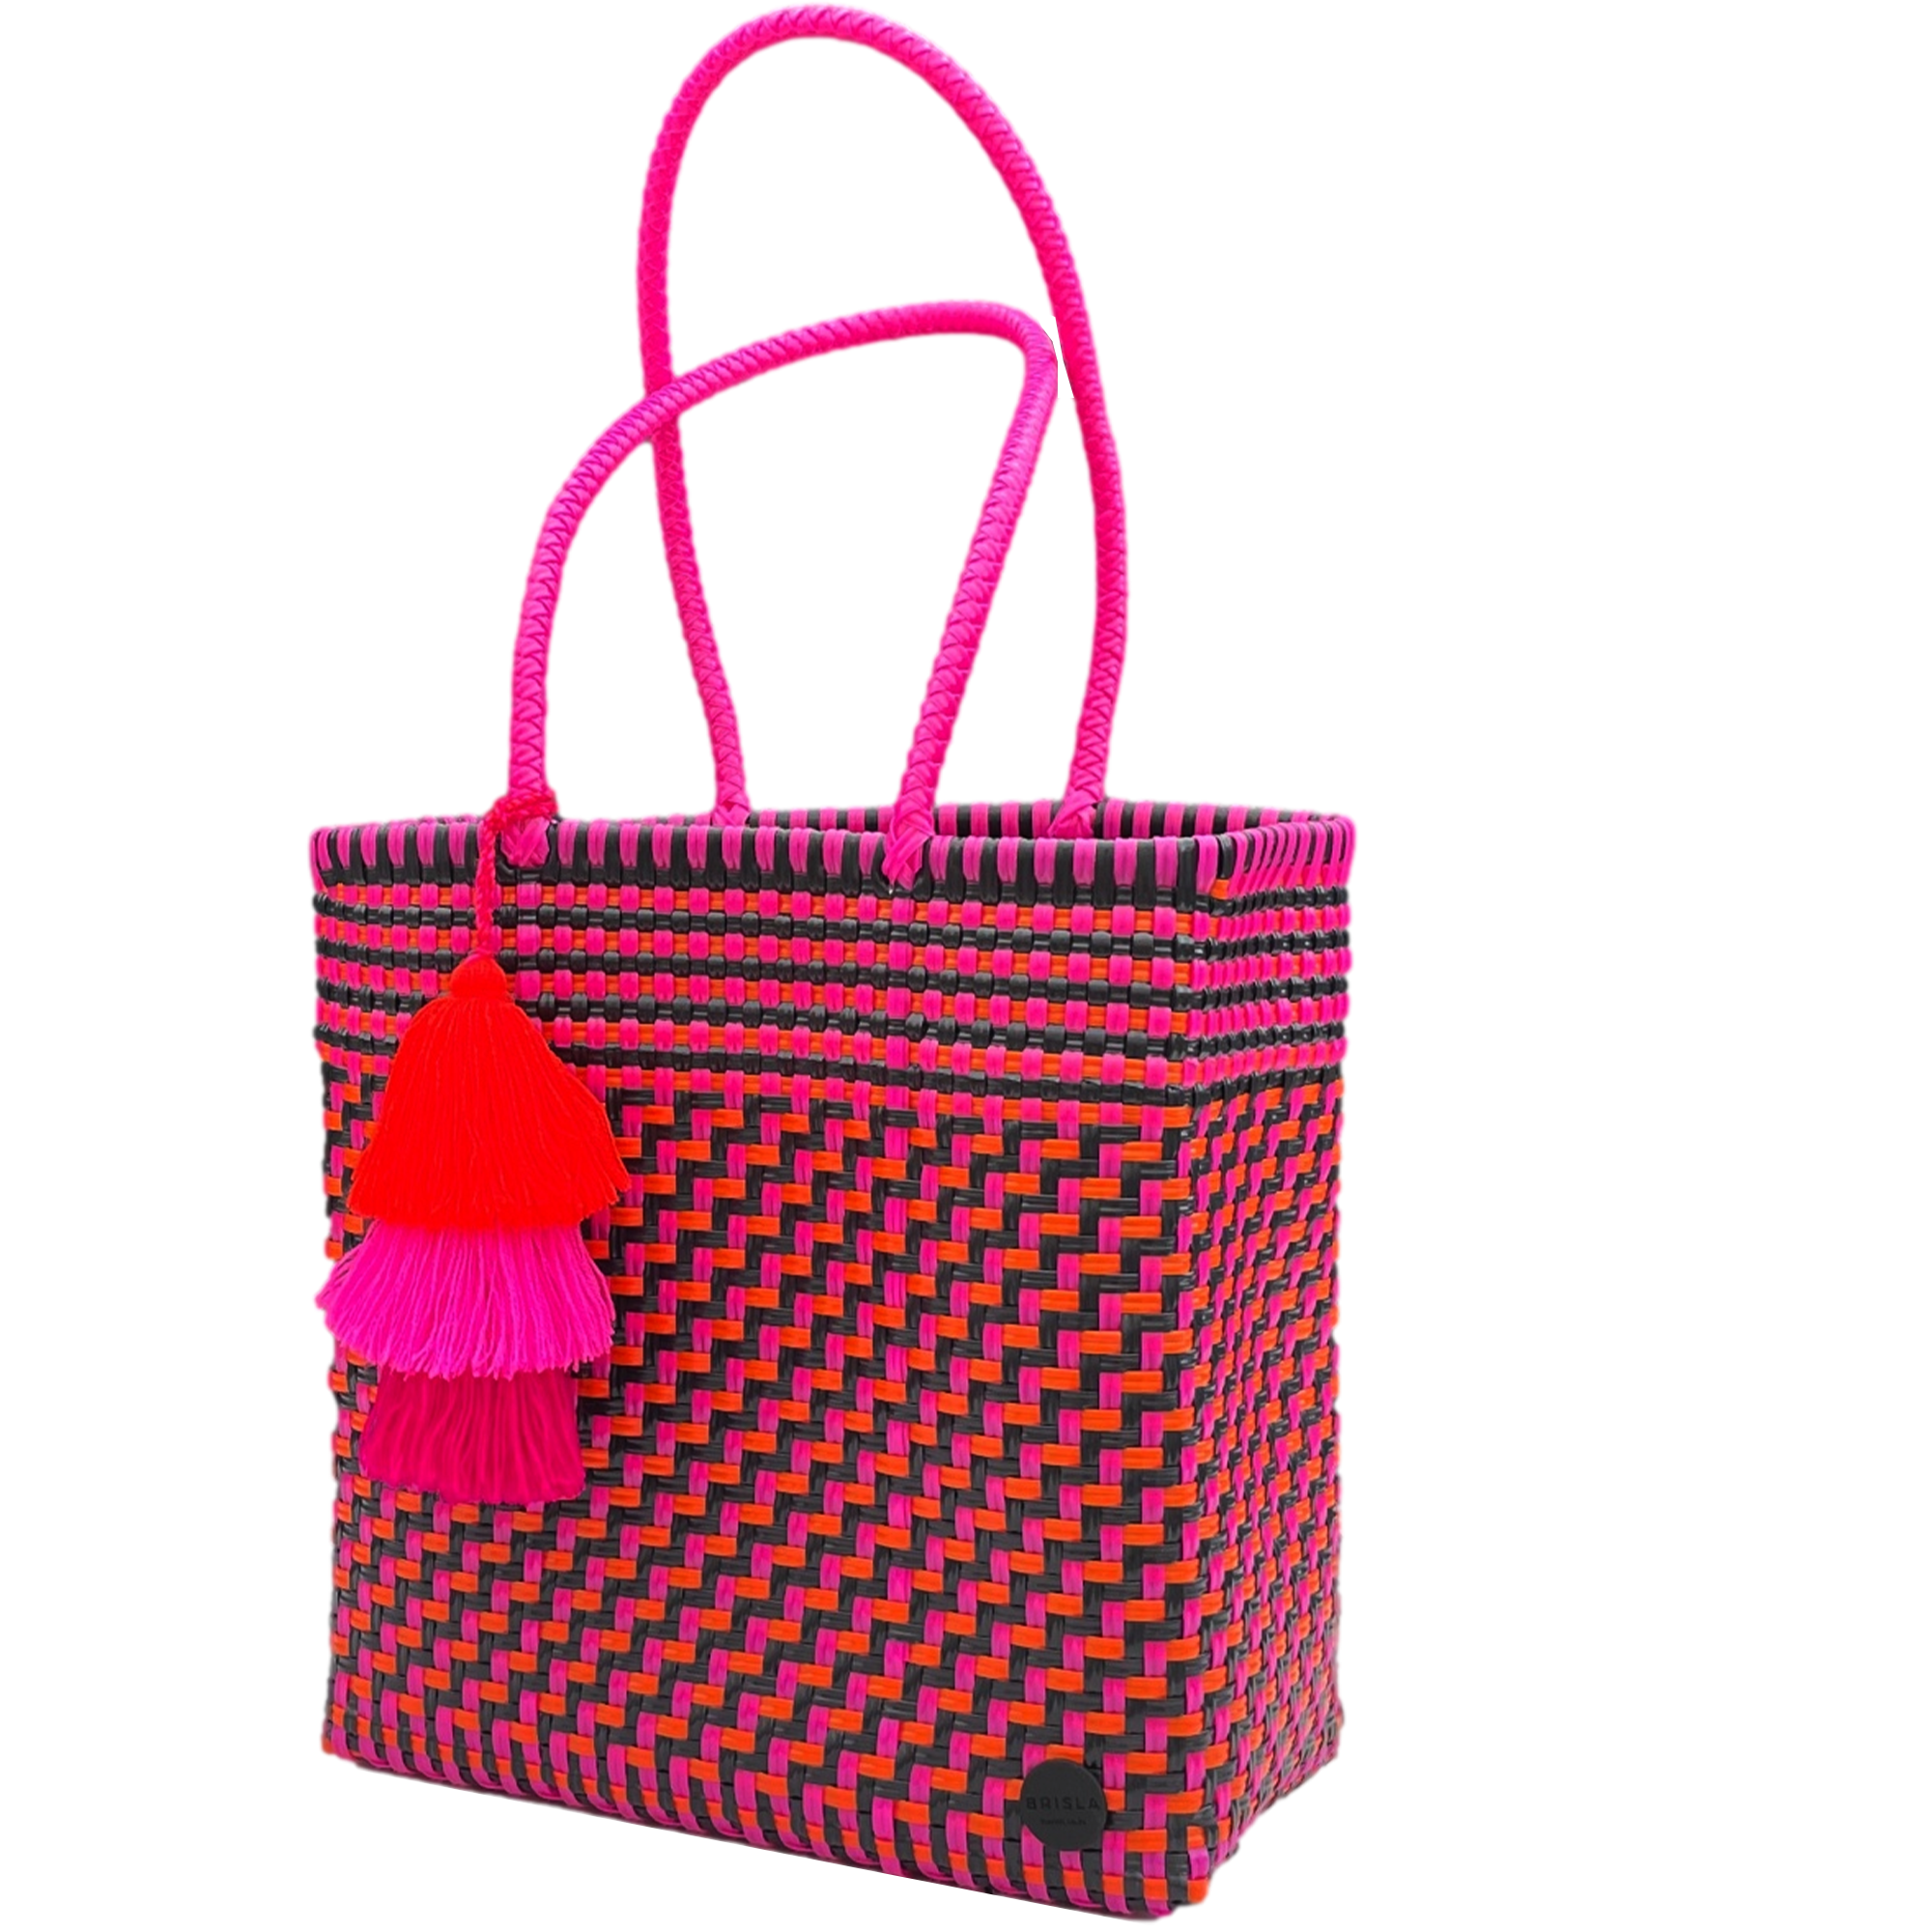 Eccentric Pink Small Tote Bag